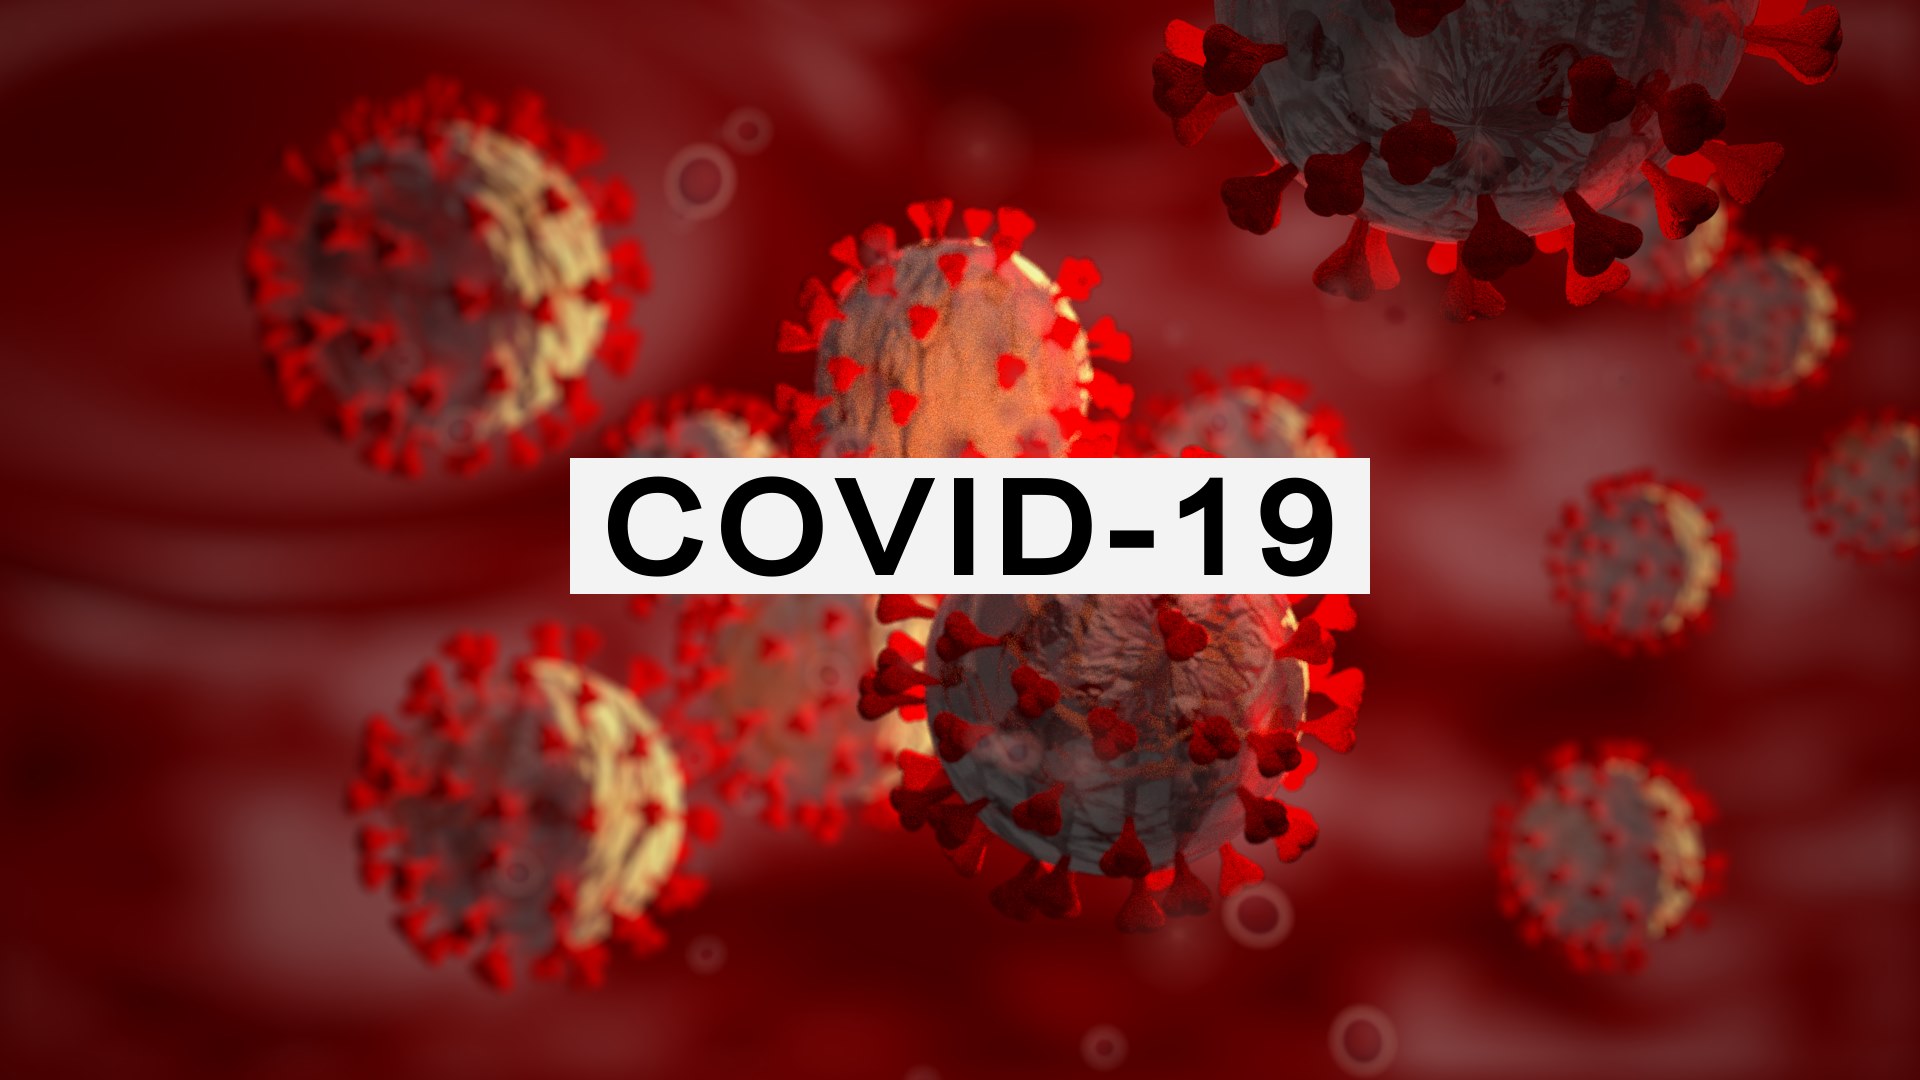 澳门在 24 小时内记录了 4 例新的 Covid-19 病例